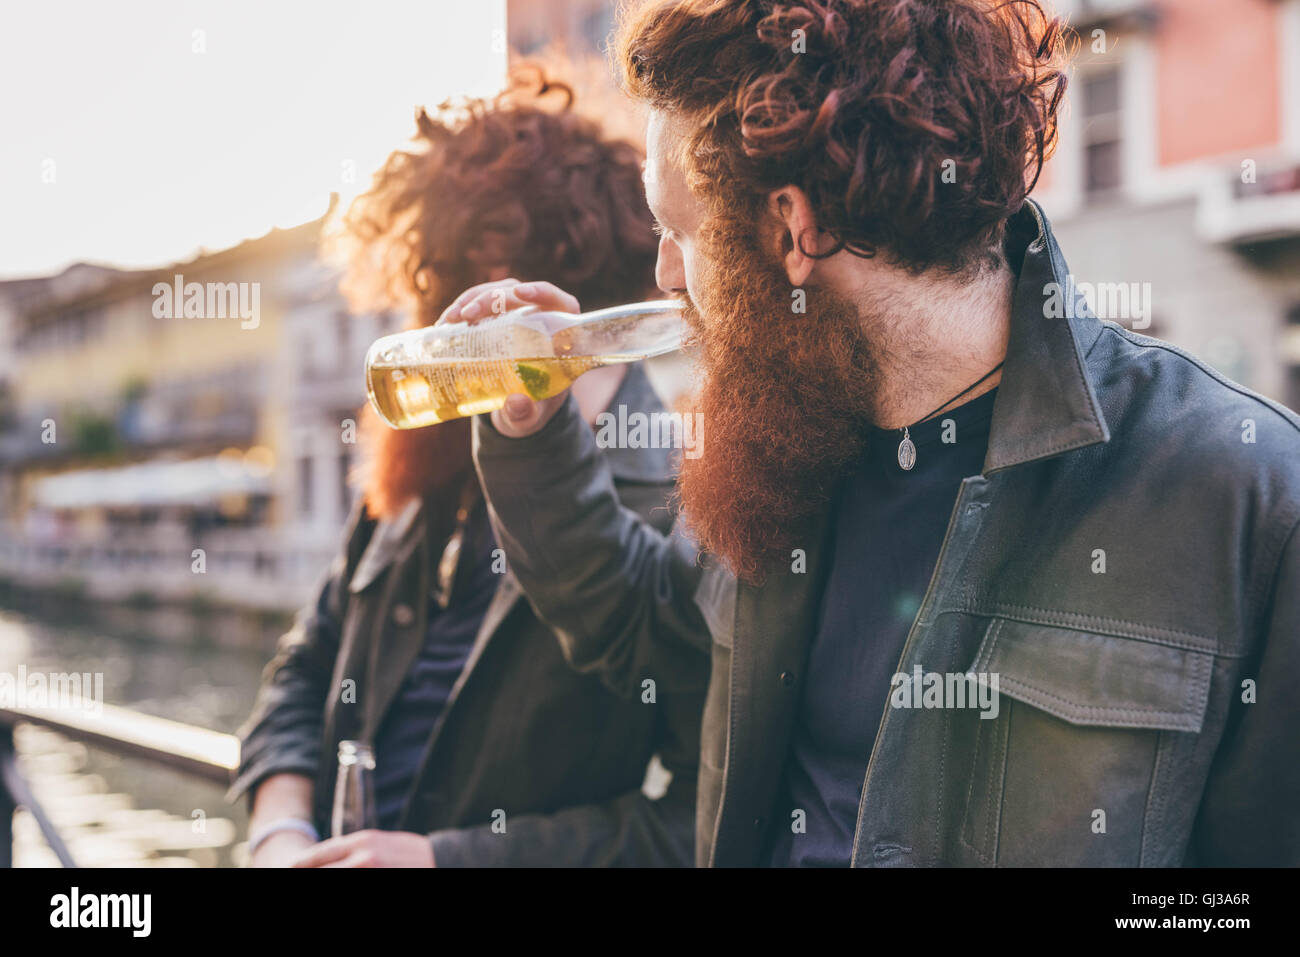 Jeune homme aux cheveux rouges jumeaux hipster et barbes de boire une bière sur canal mer Banque D'Images